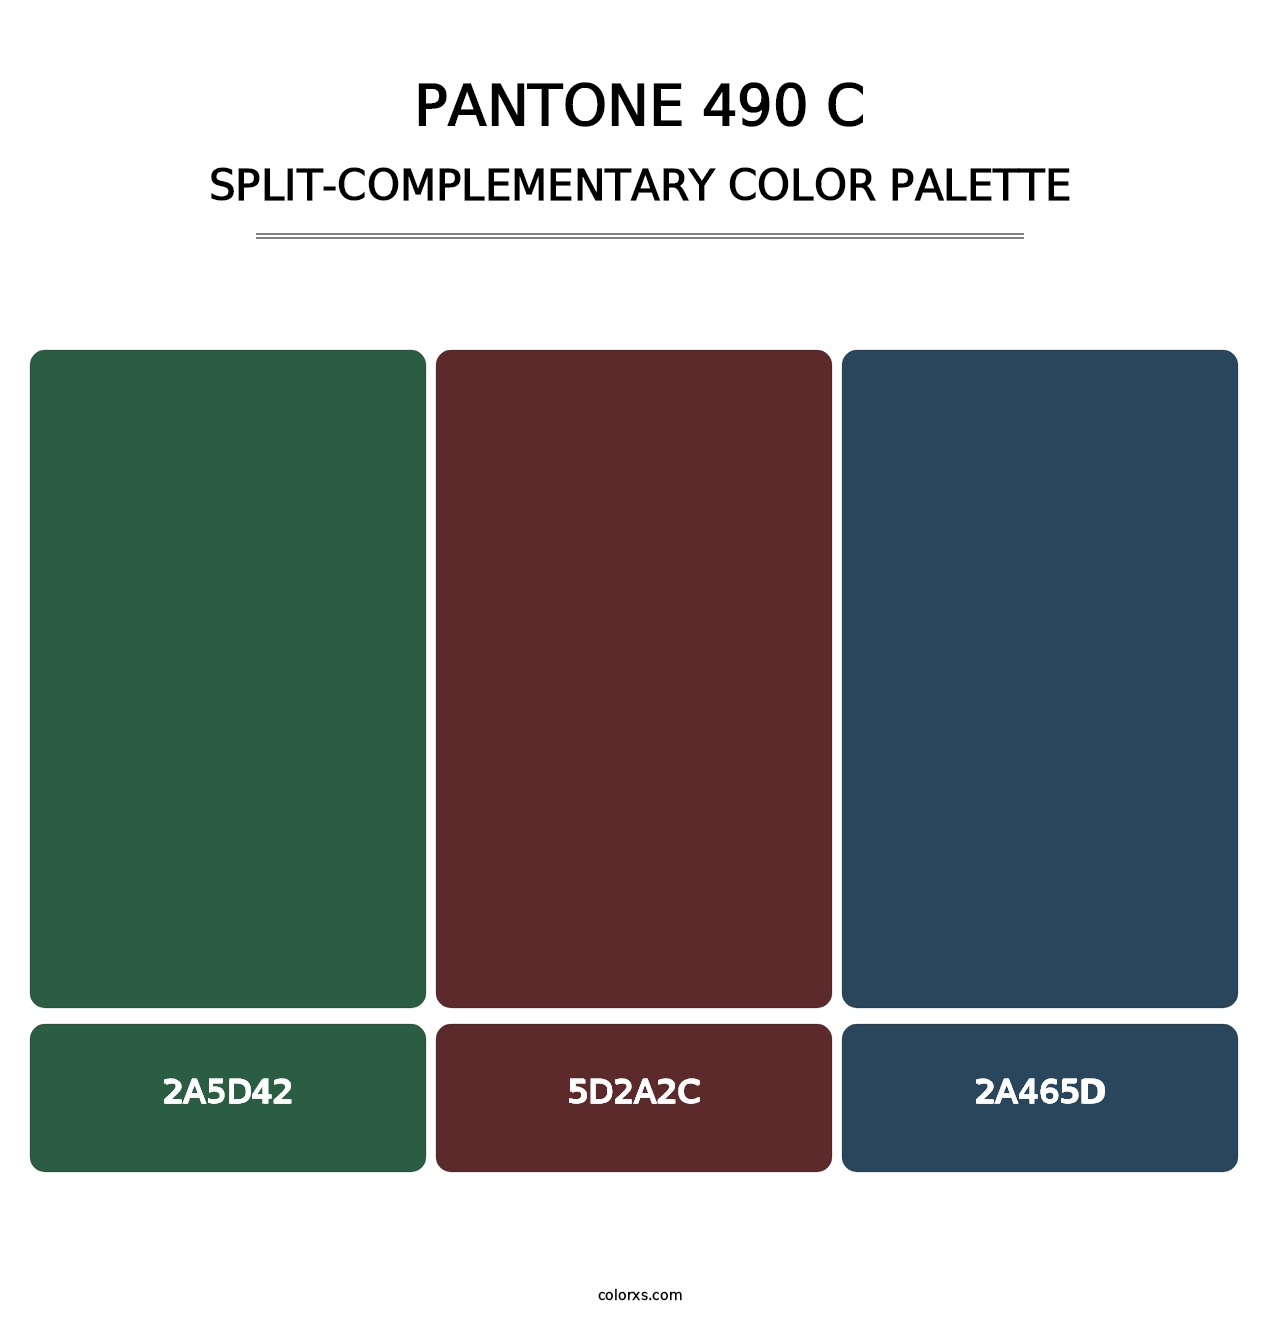 PANTONE 490 C - Split-Complementary Color Palette